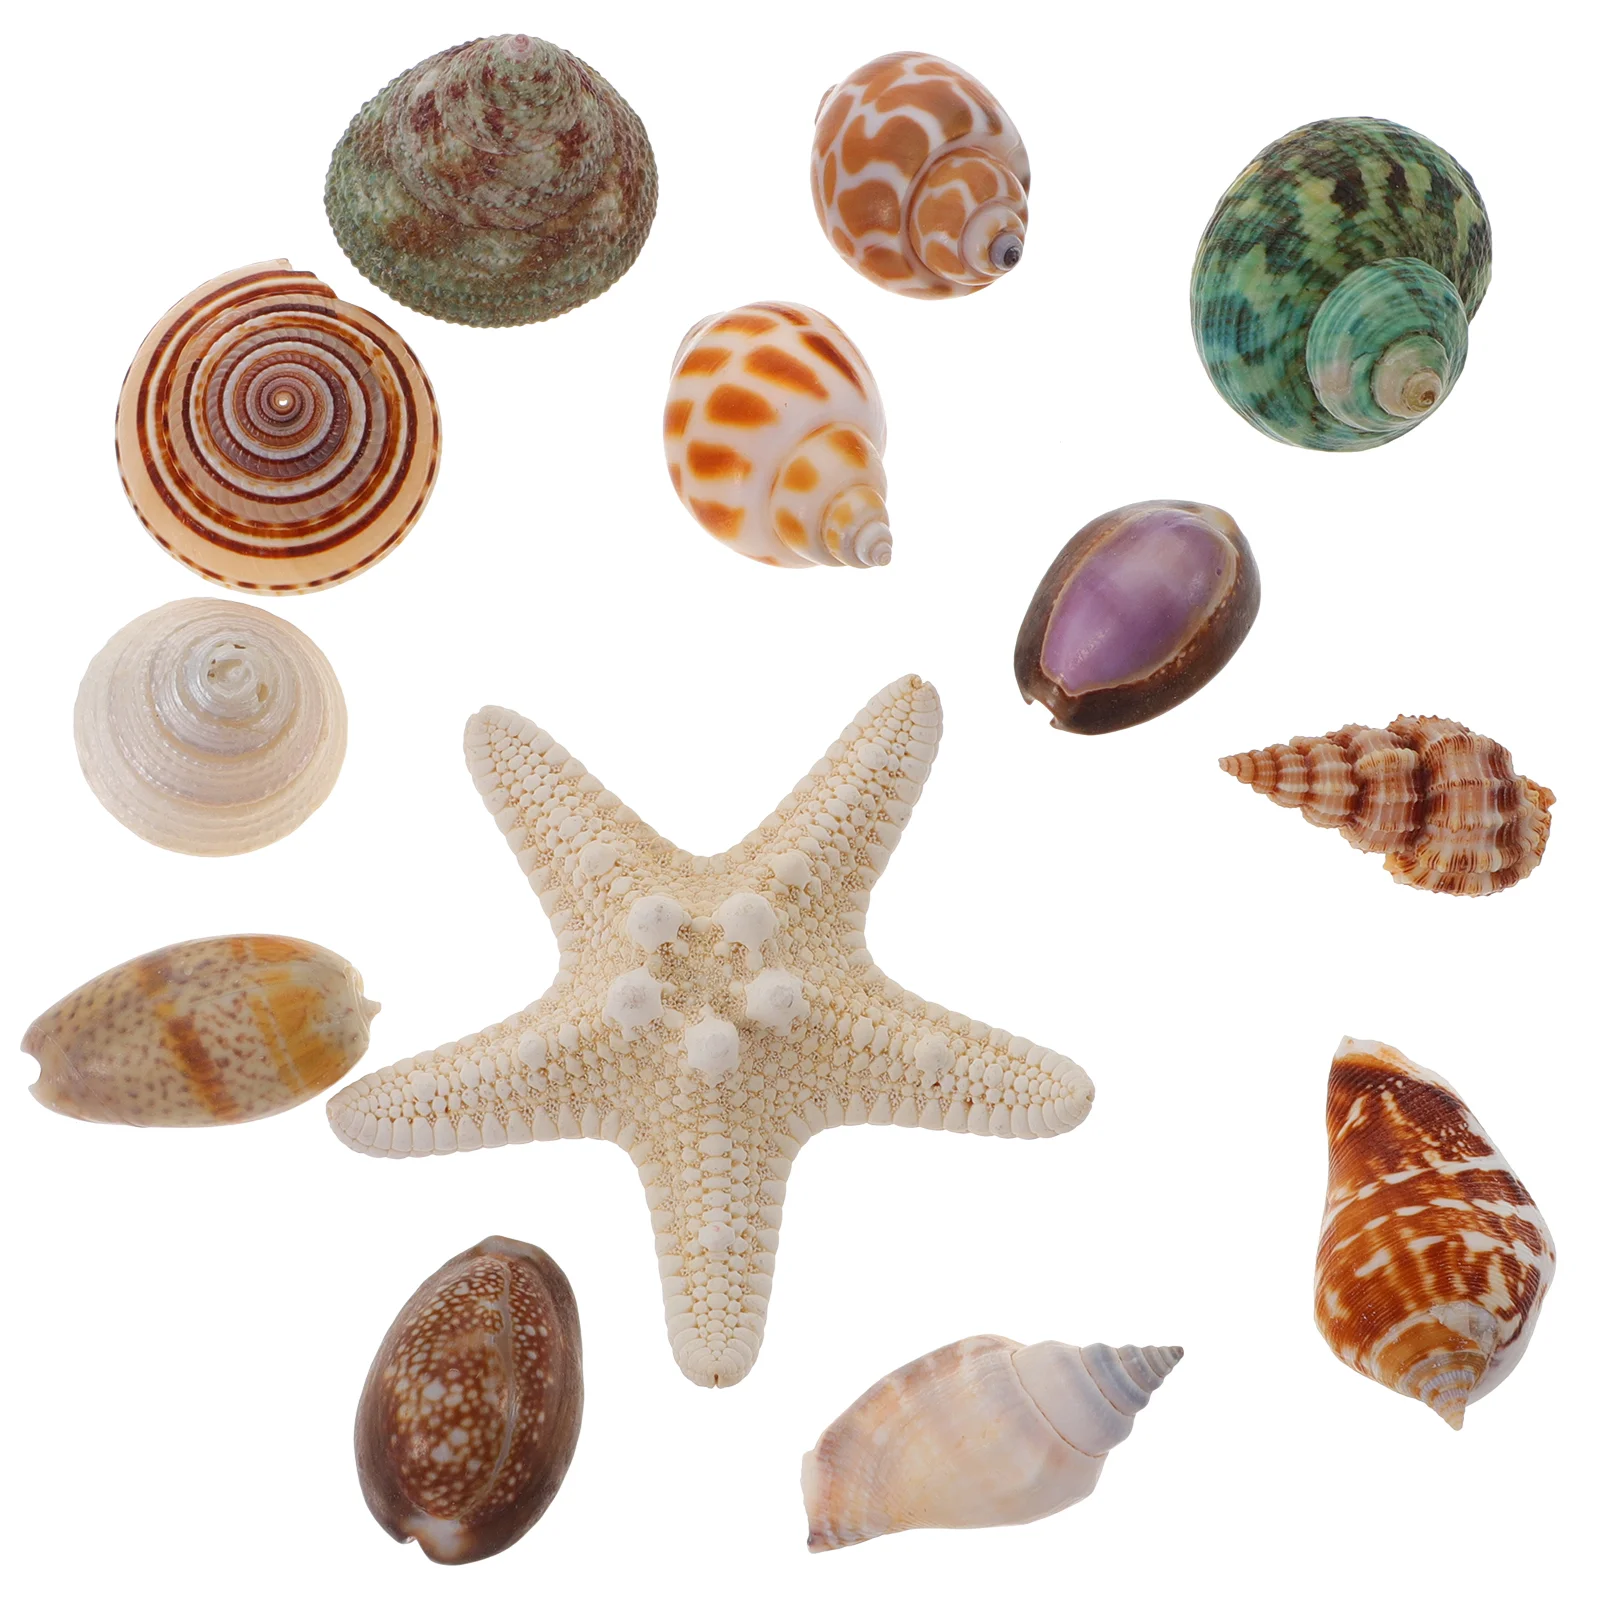 

13 Pcs Aquarium Conch Ocean Jewelry Natural Shells Decor Fish Tank Landscaping Decor Natural Fish Tank Decorations